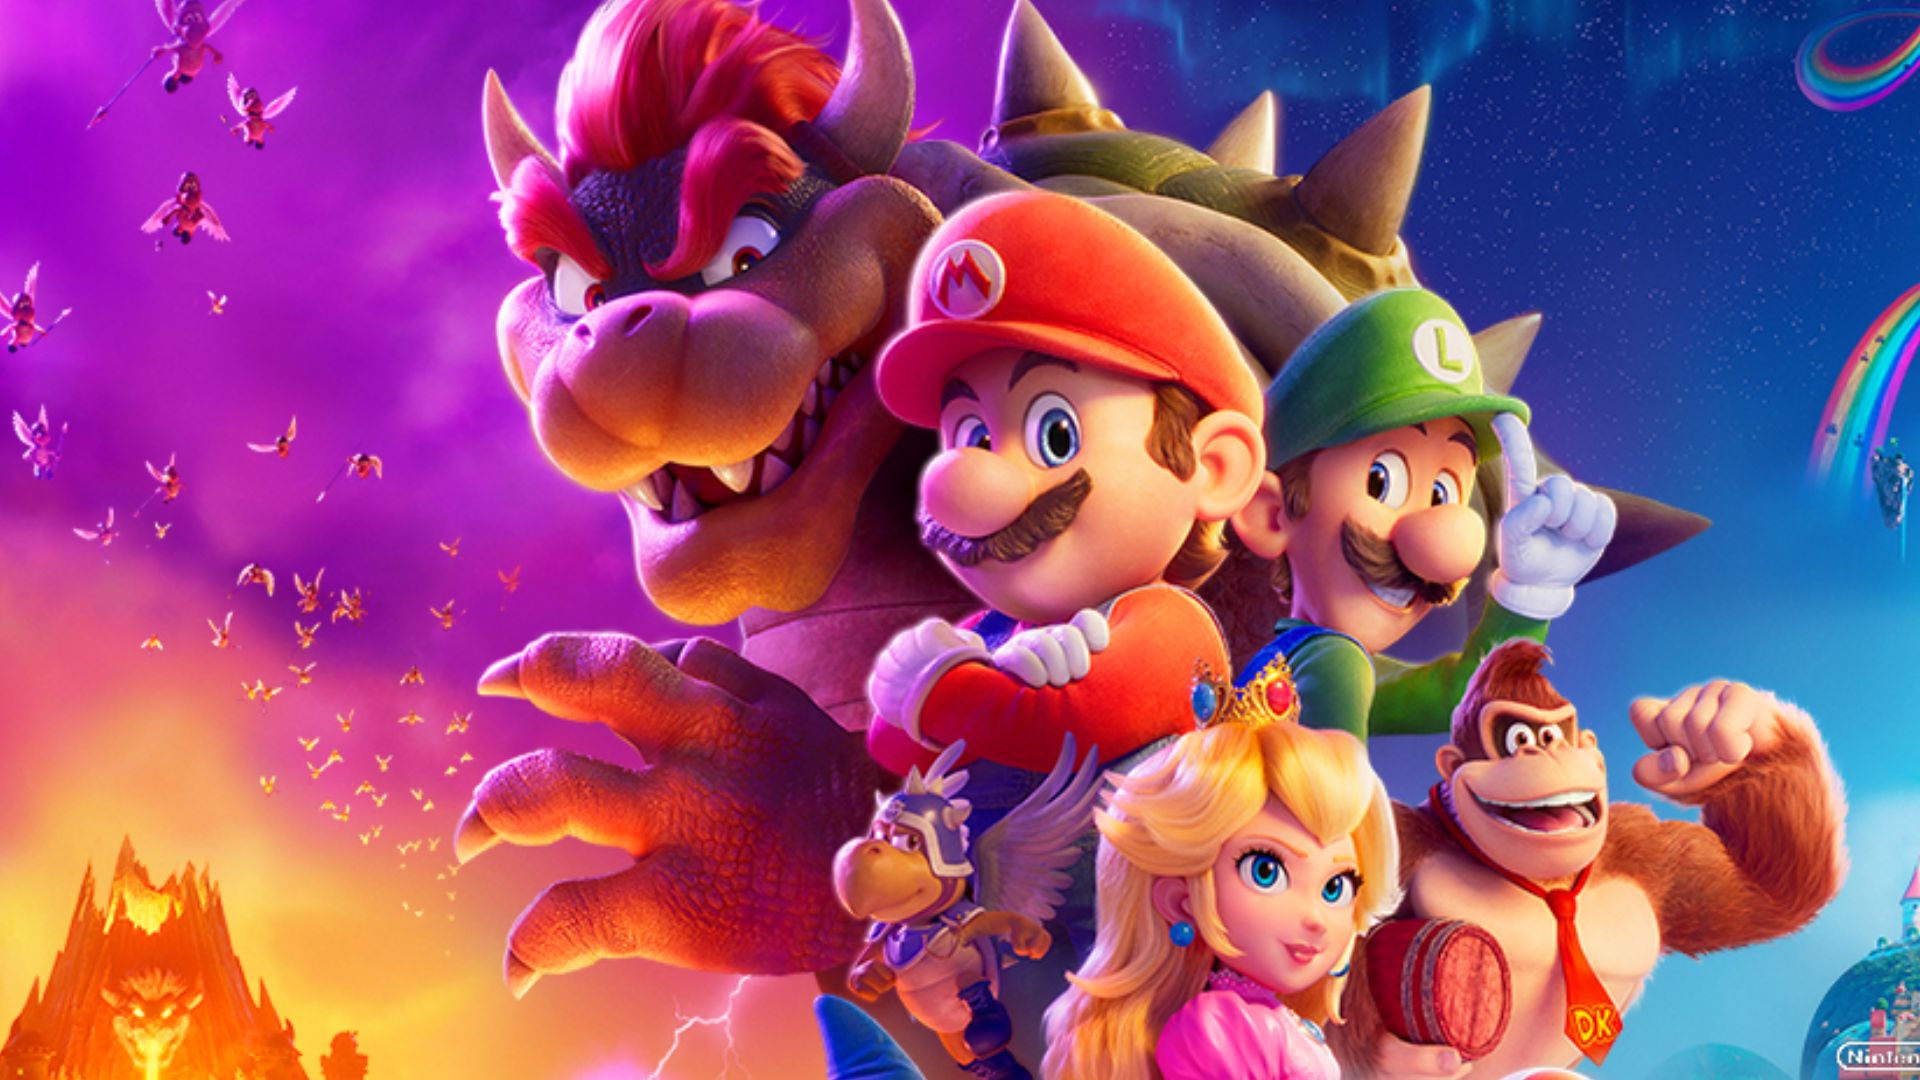 poster de super Mario bros la pelicula promocional todos los personajes